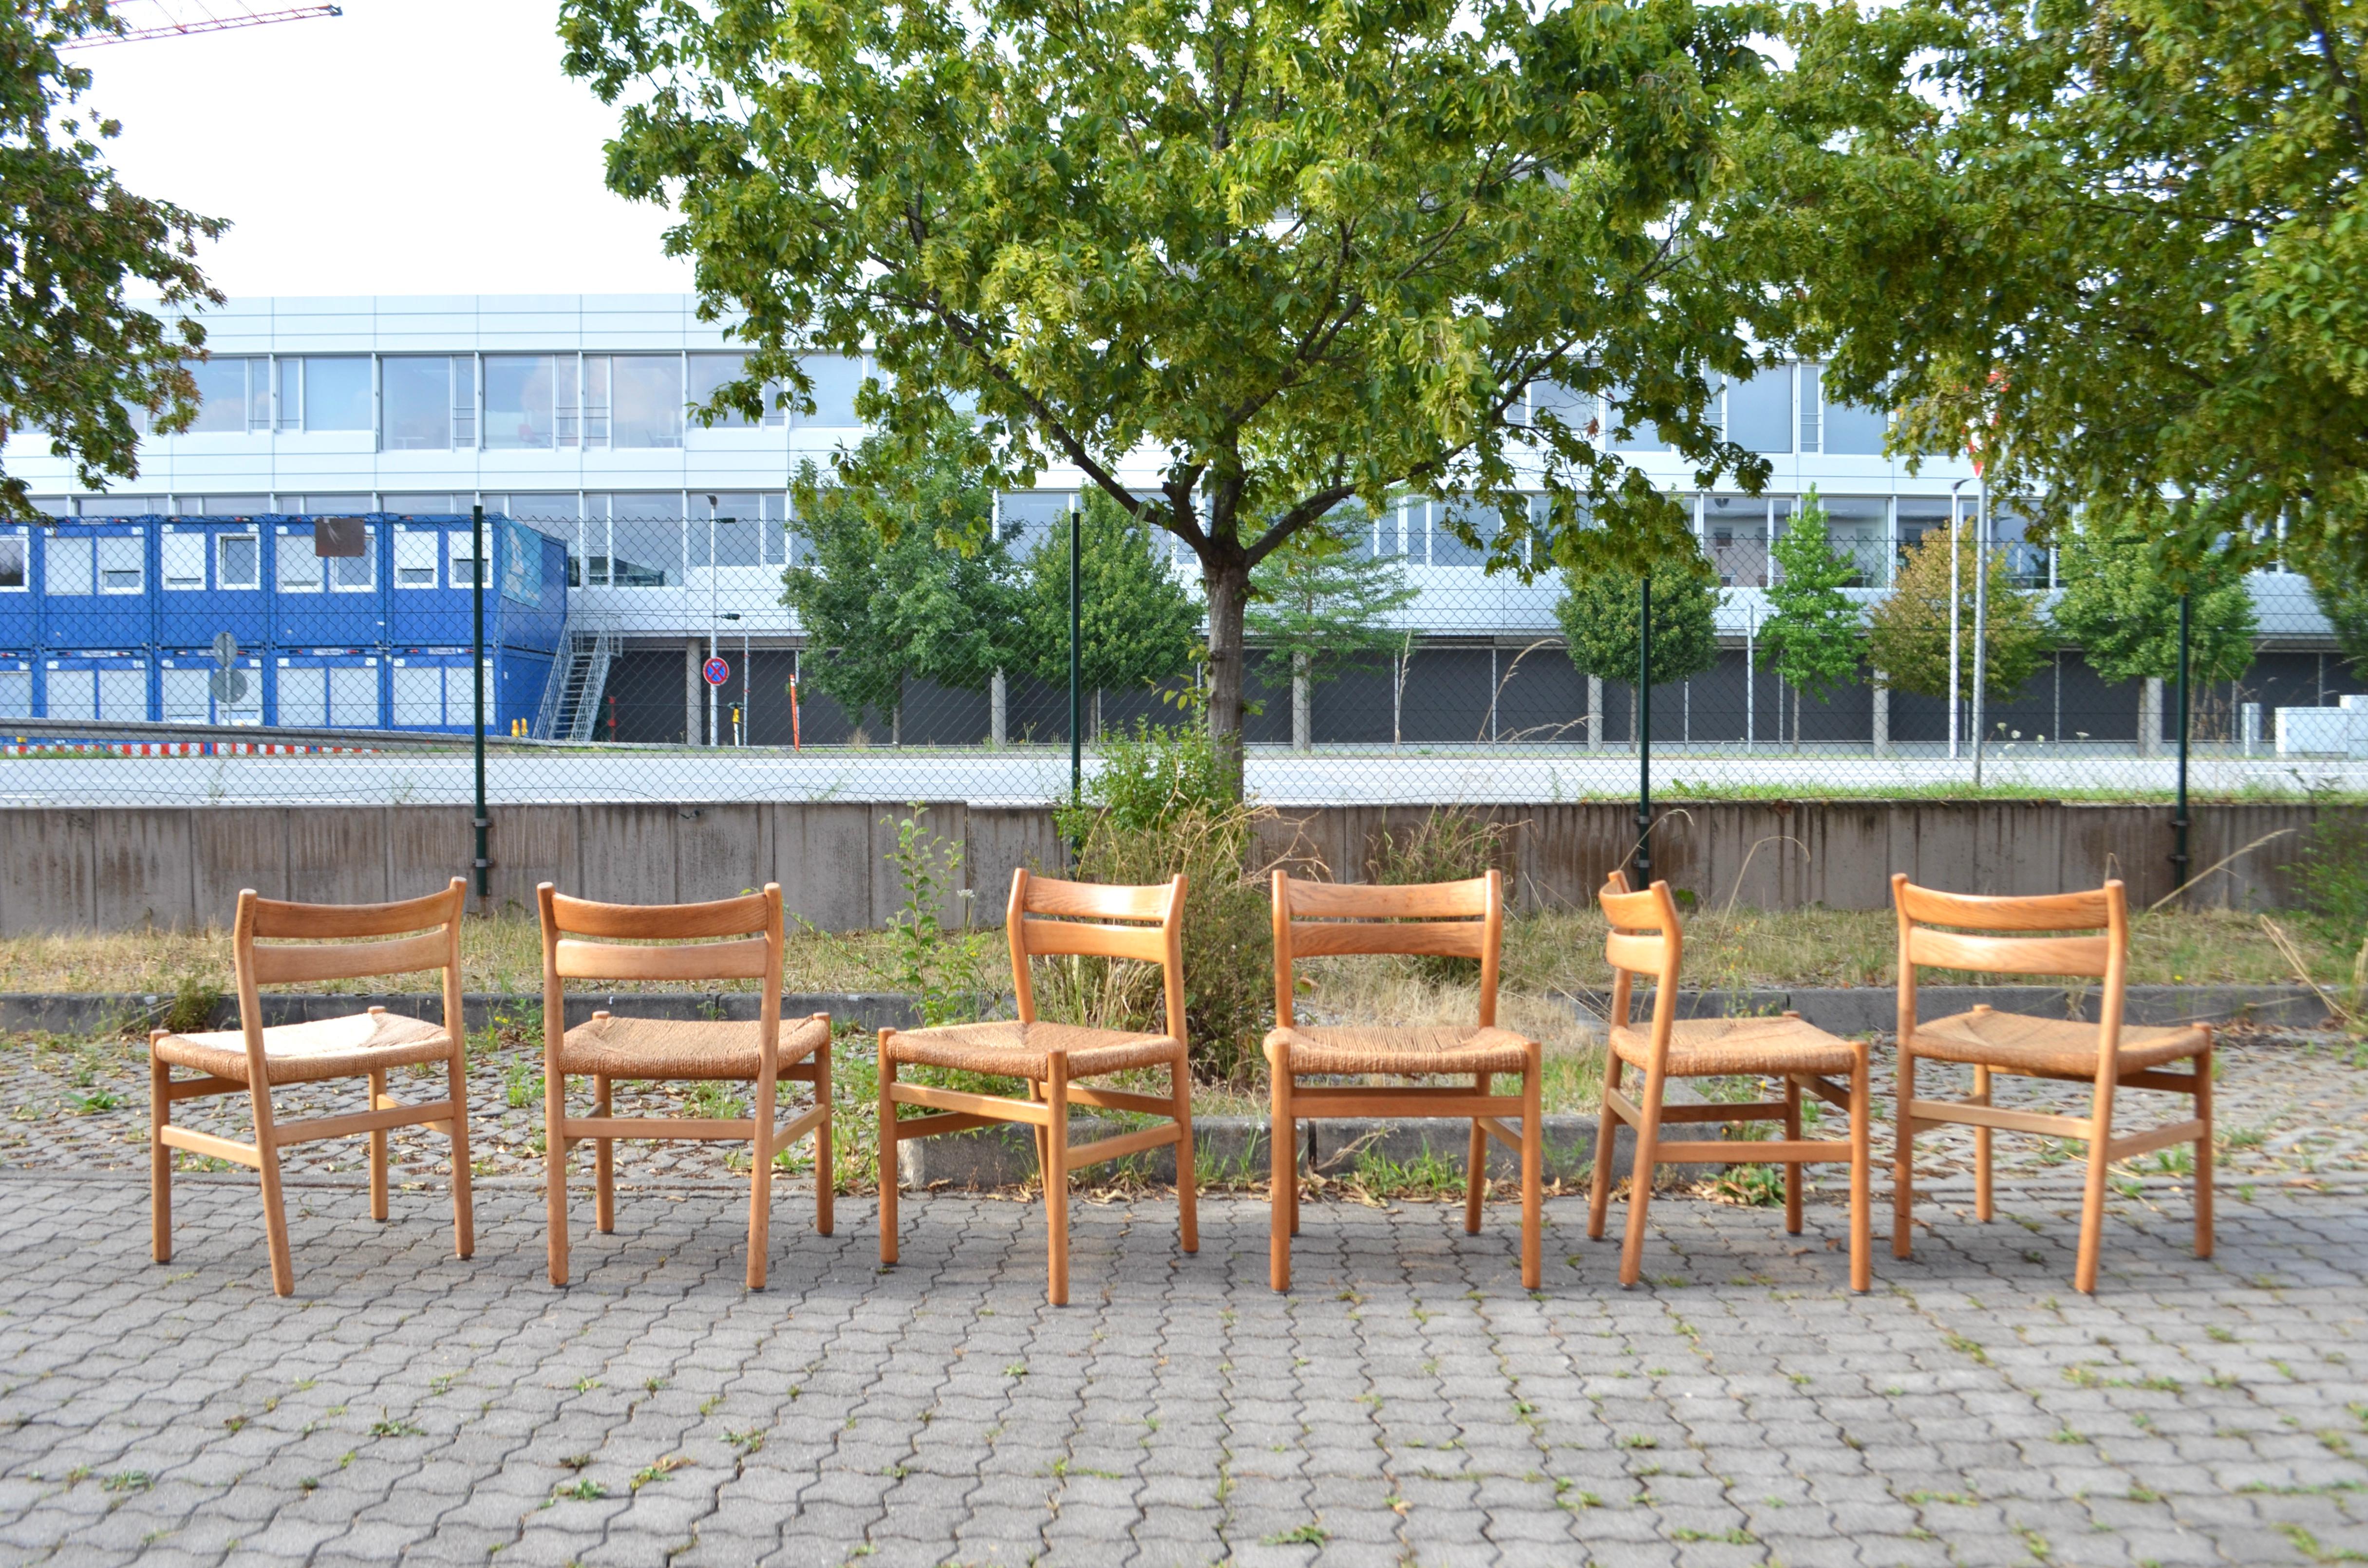 Cet ensemble de 6 chaises modèle BM1.
Il a été conçu  1958, par Børge Mogensen et produit par A.M.Madssn Fabriken.
Ces chaises sont anciennes et de la première production.
Le design s'inspire du mobilier américain Shakers. 
Il est fabriqué en chêne